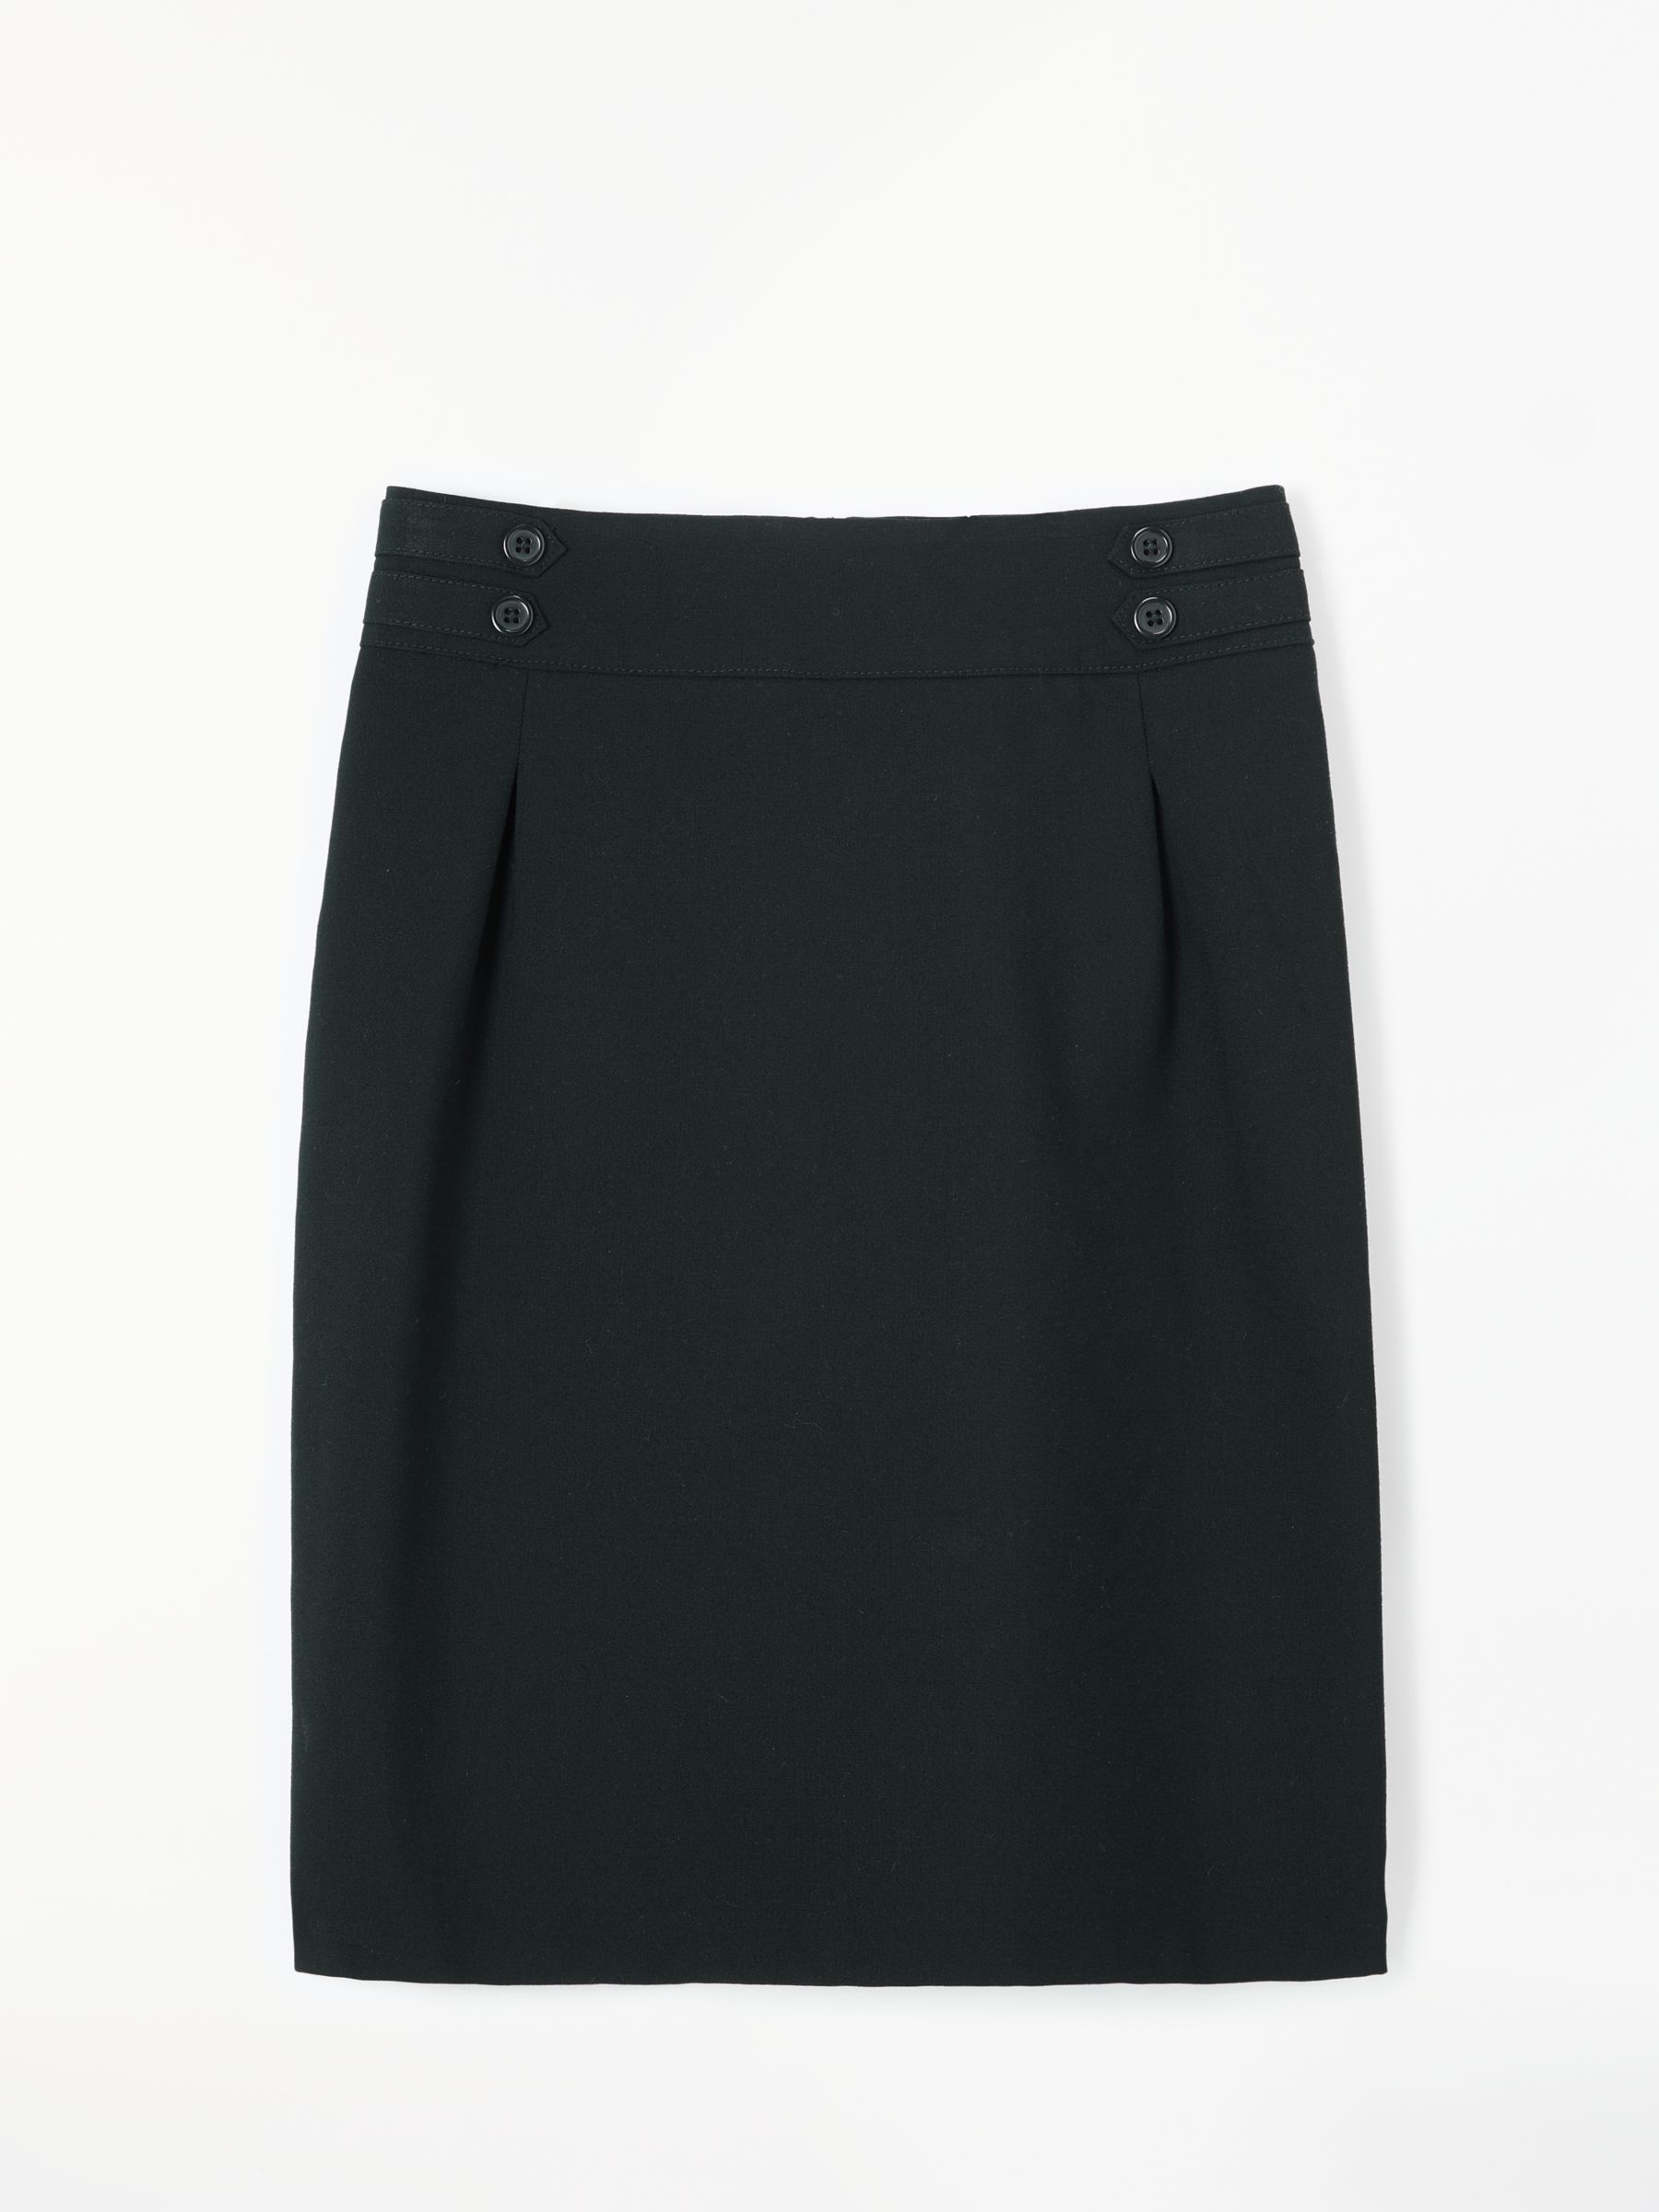 John Lewis Senior Girls' School Pencil Skirt, Black at John Lewis ...